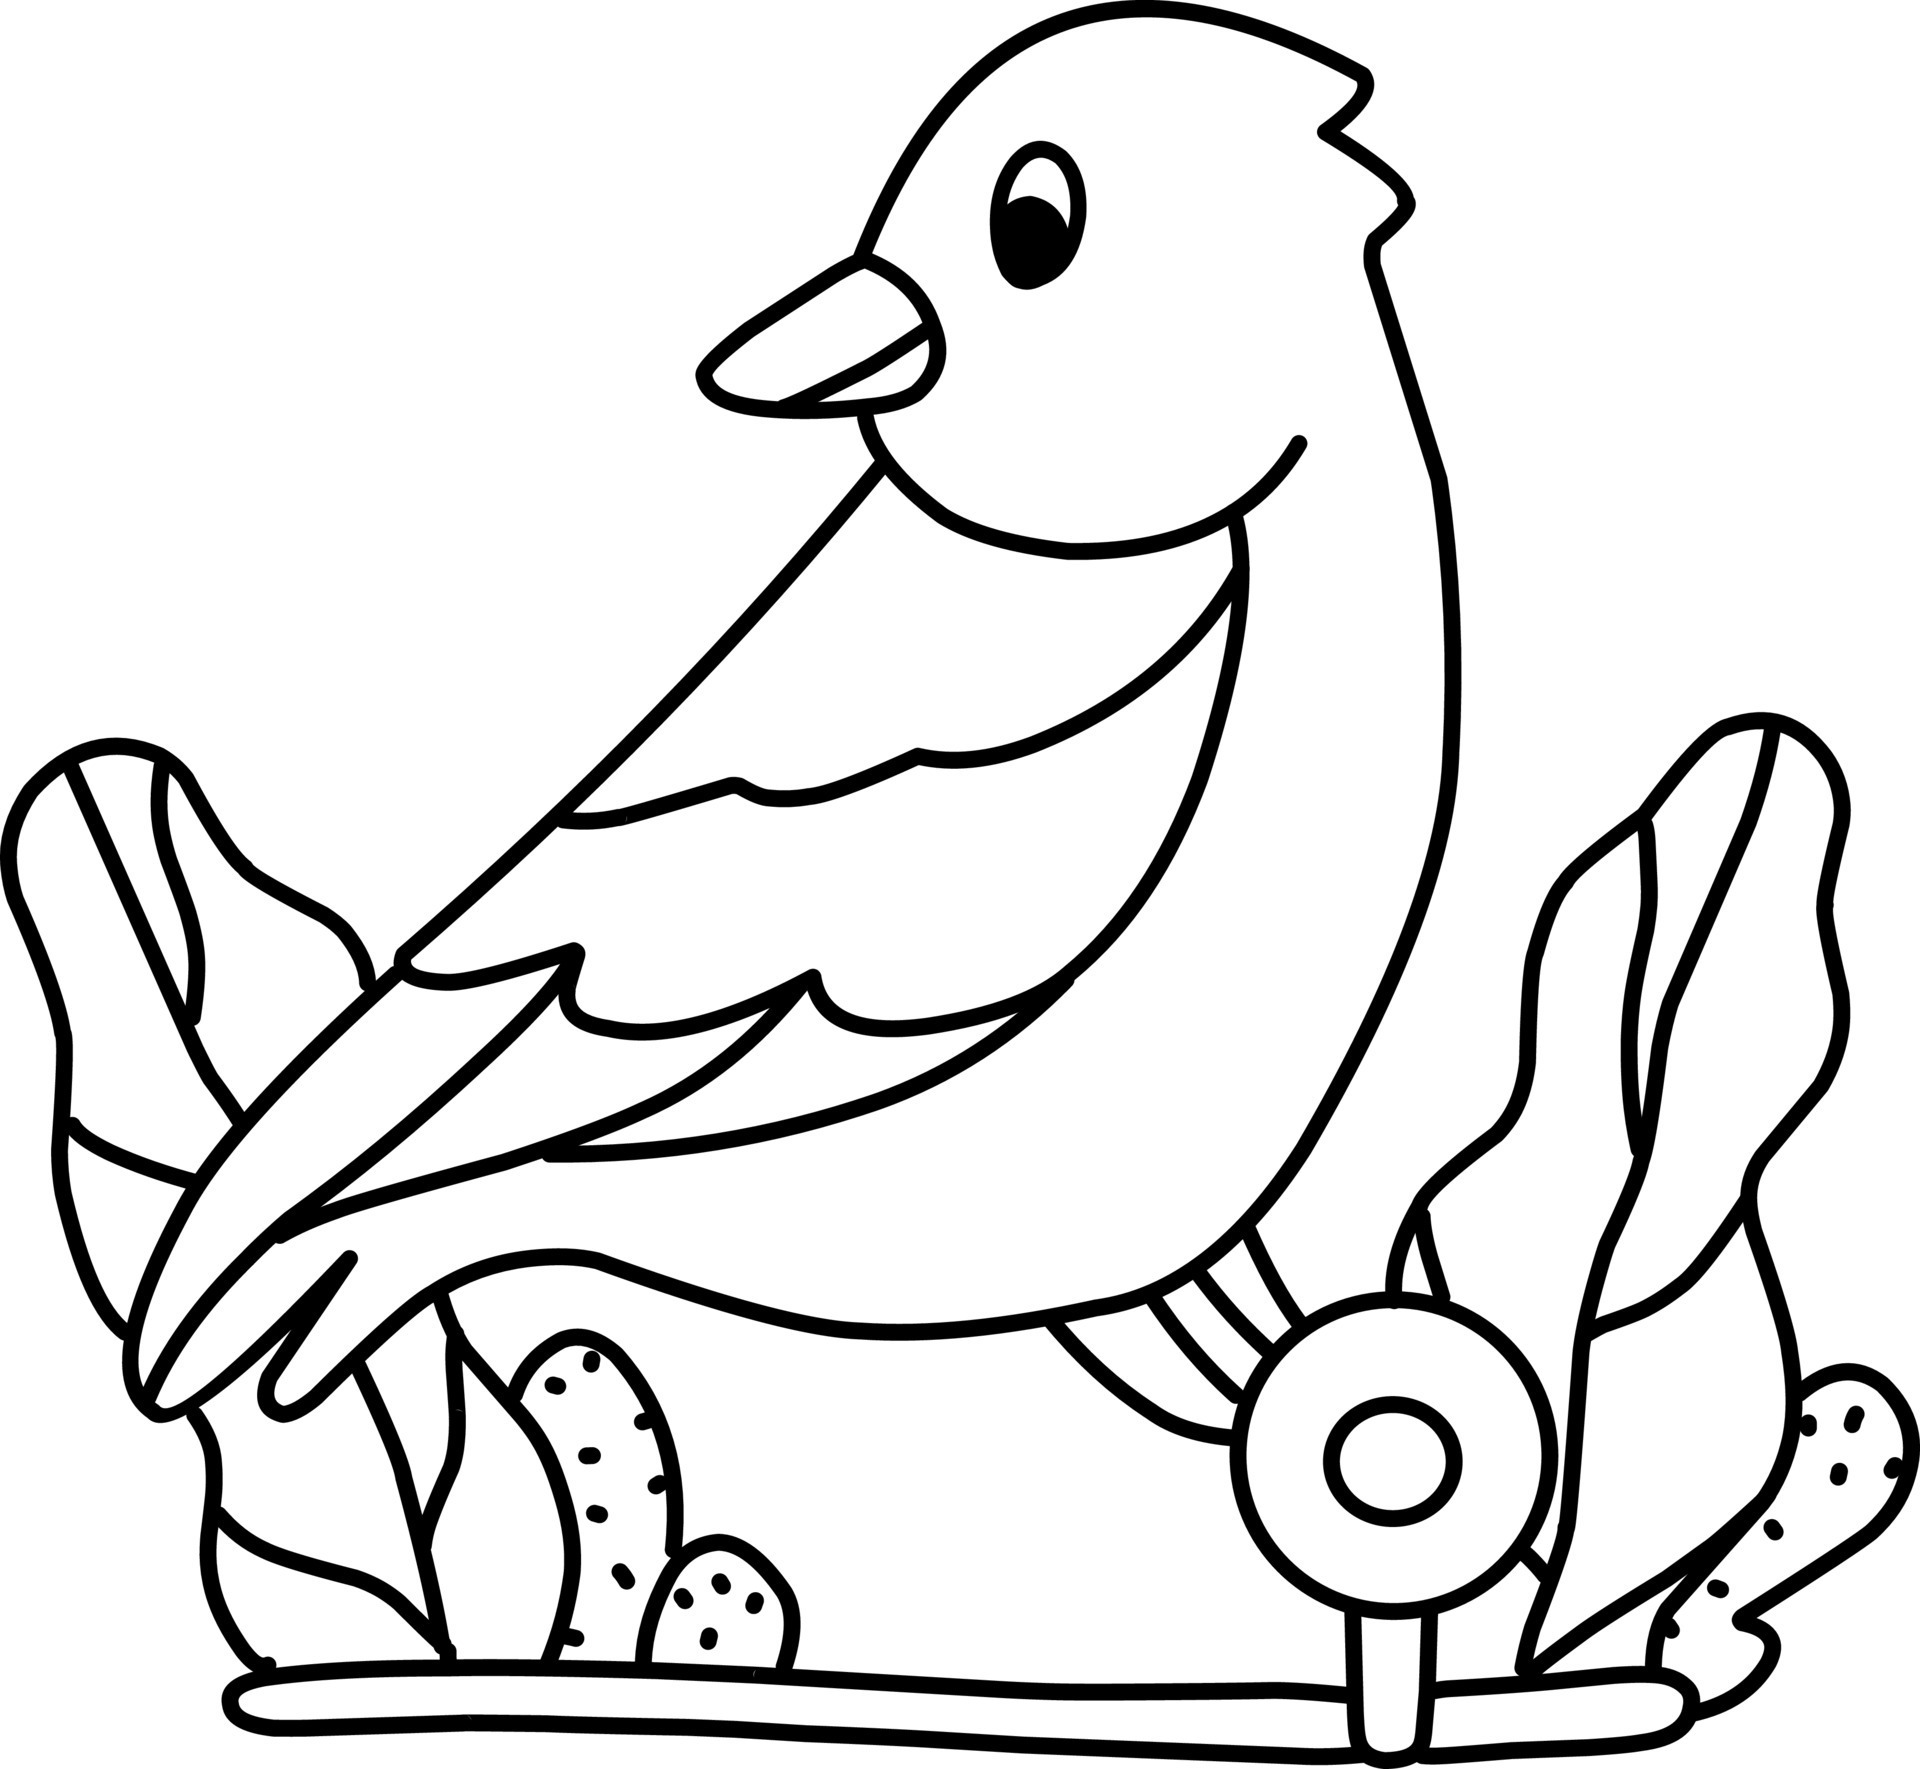 Desenhos para colorir de desenho de um canário para colorir online  